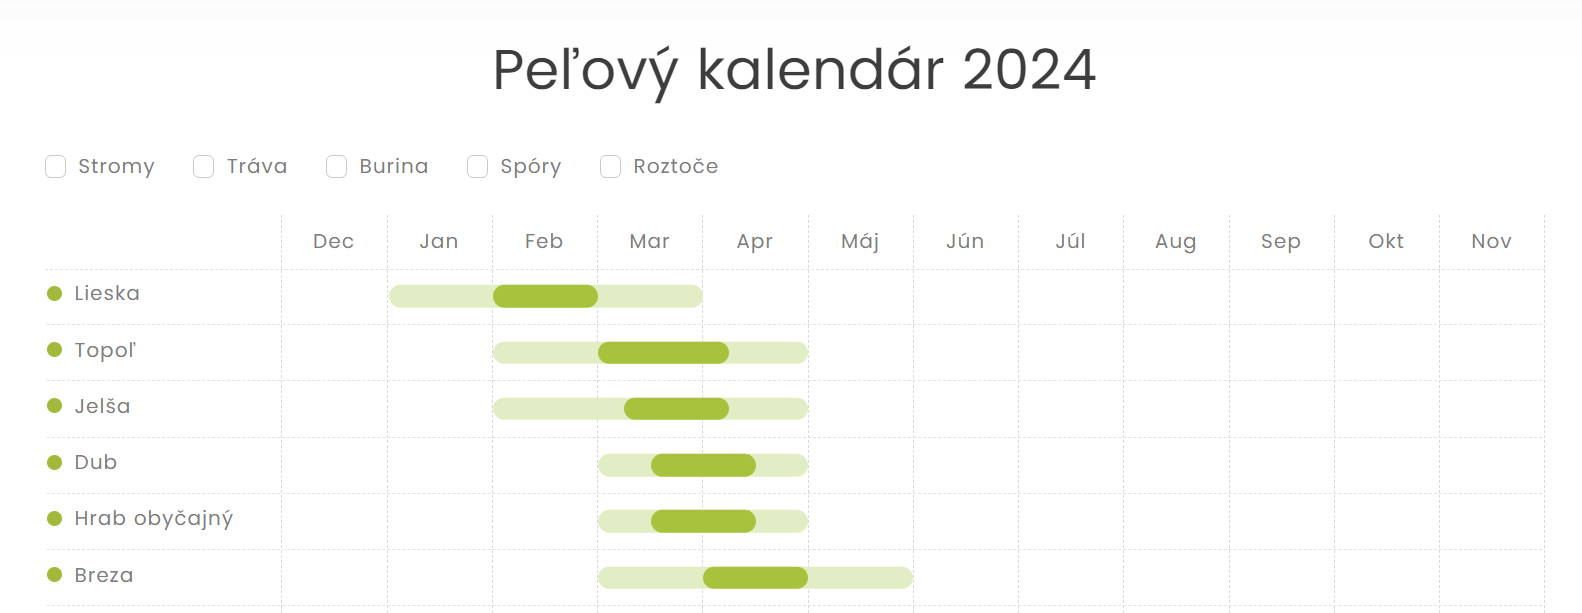 Peľový kalendár pre Slovensko, ktorý ukazuje, kedy stromy, trávy a buriny zvyčajne uvoľňujú peľ a môžu vyvolať alergickú nádchu